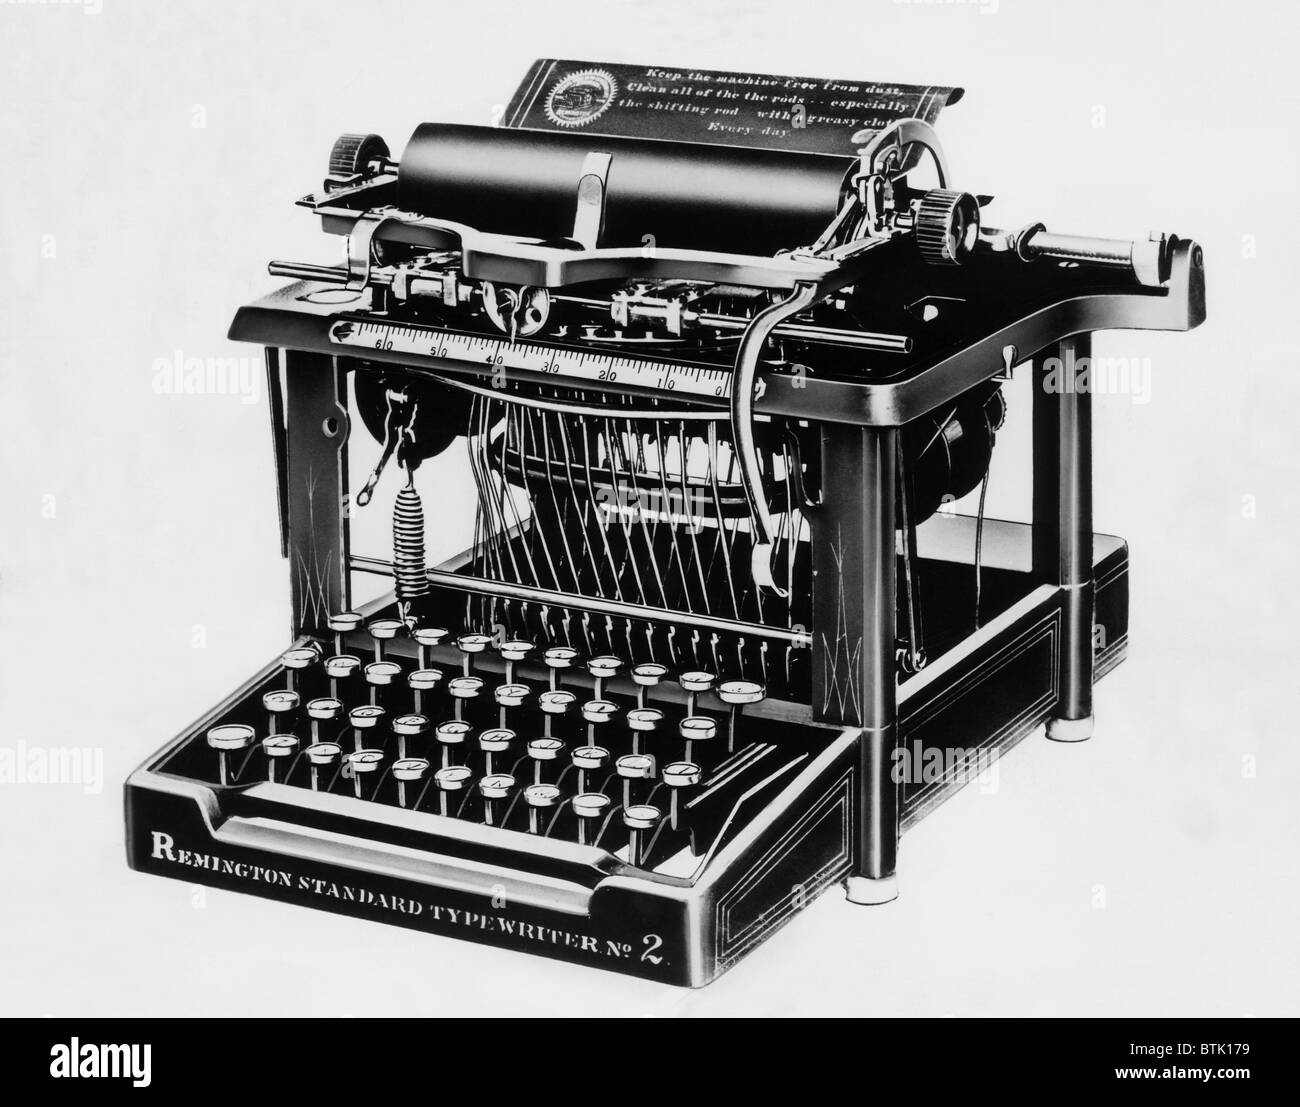 La Remington #2, la prima macchina da scrivere in grado di stampare lettere minuscole e maiuscole, circa 1878. Archivi CSU/cortesia Evere Foto Stock